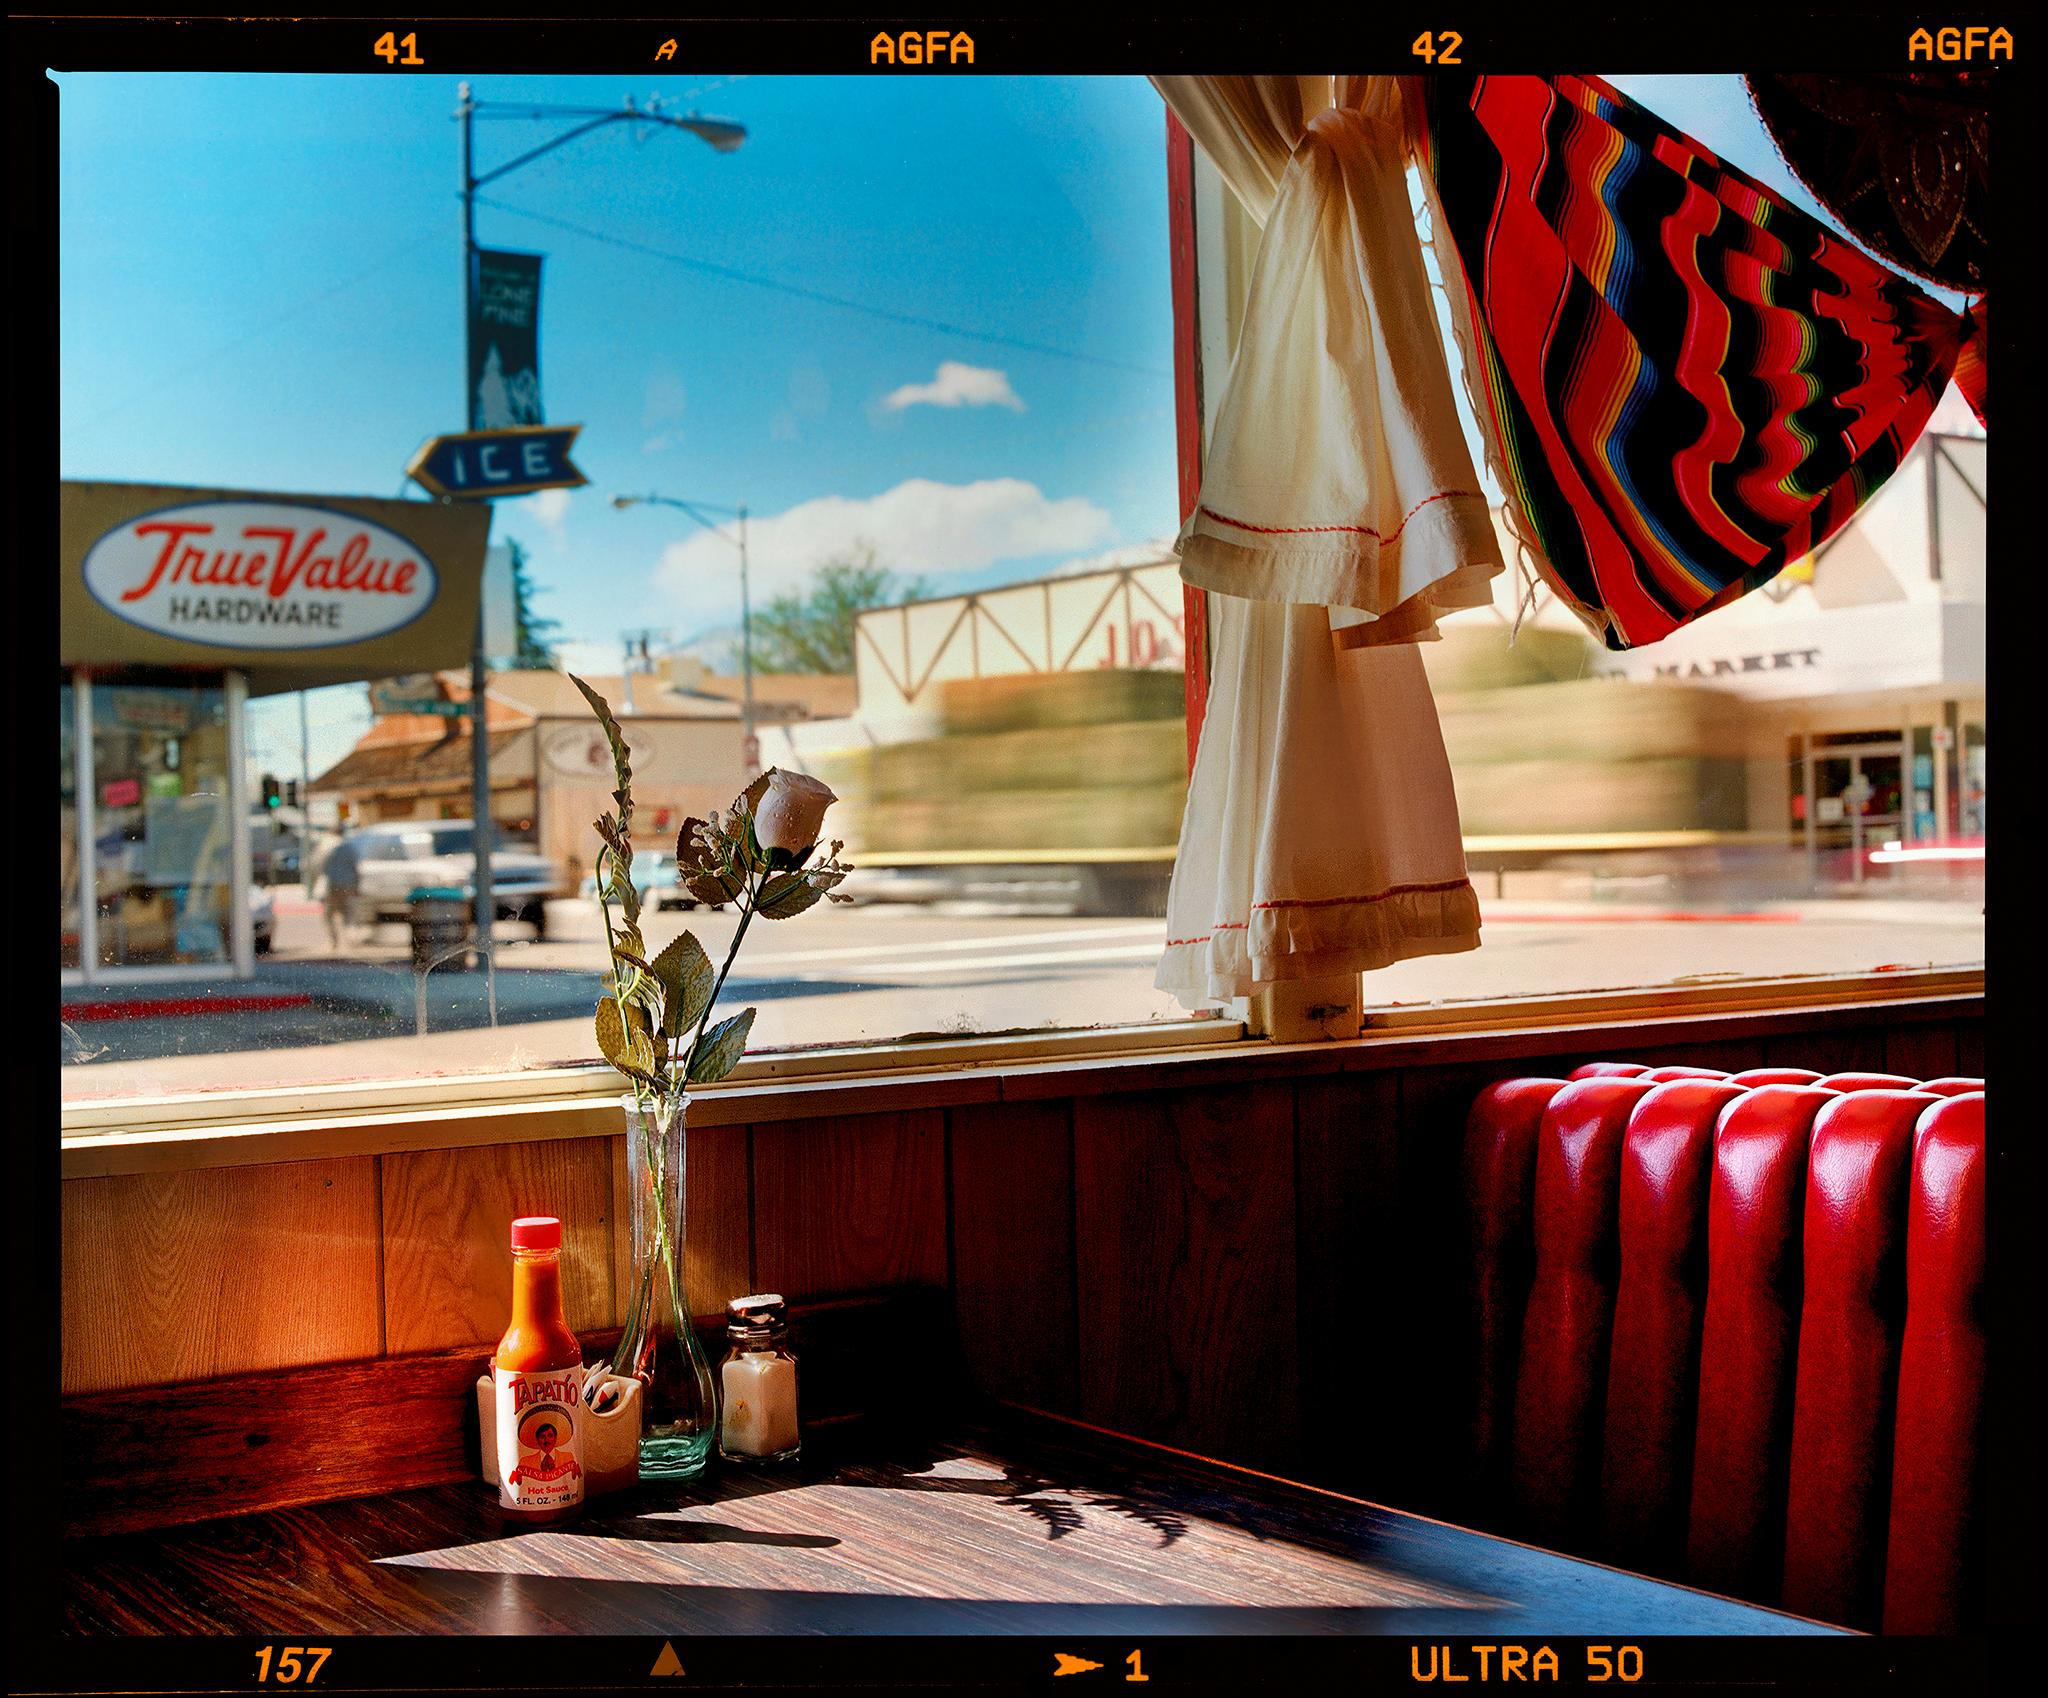 Bonanza Café (Film Edge), Lone Pine, California - American Diner Interior Photo